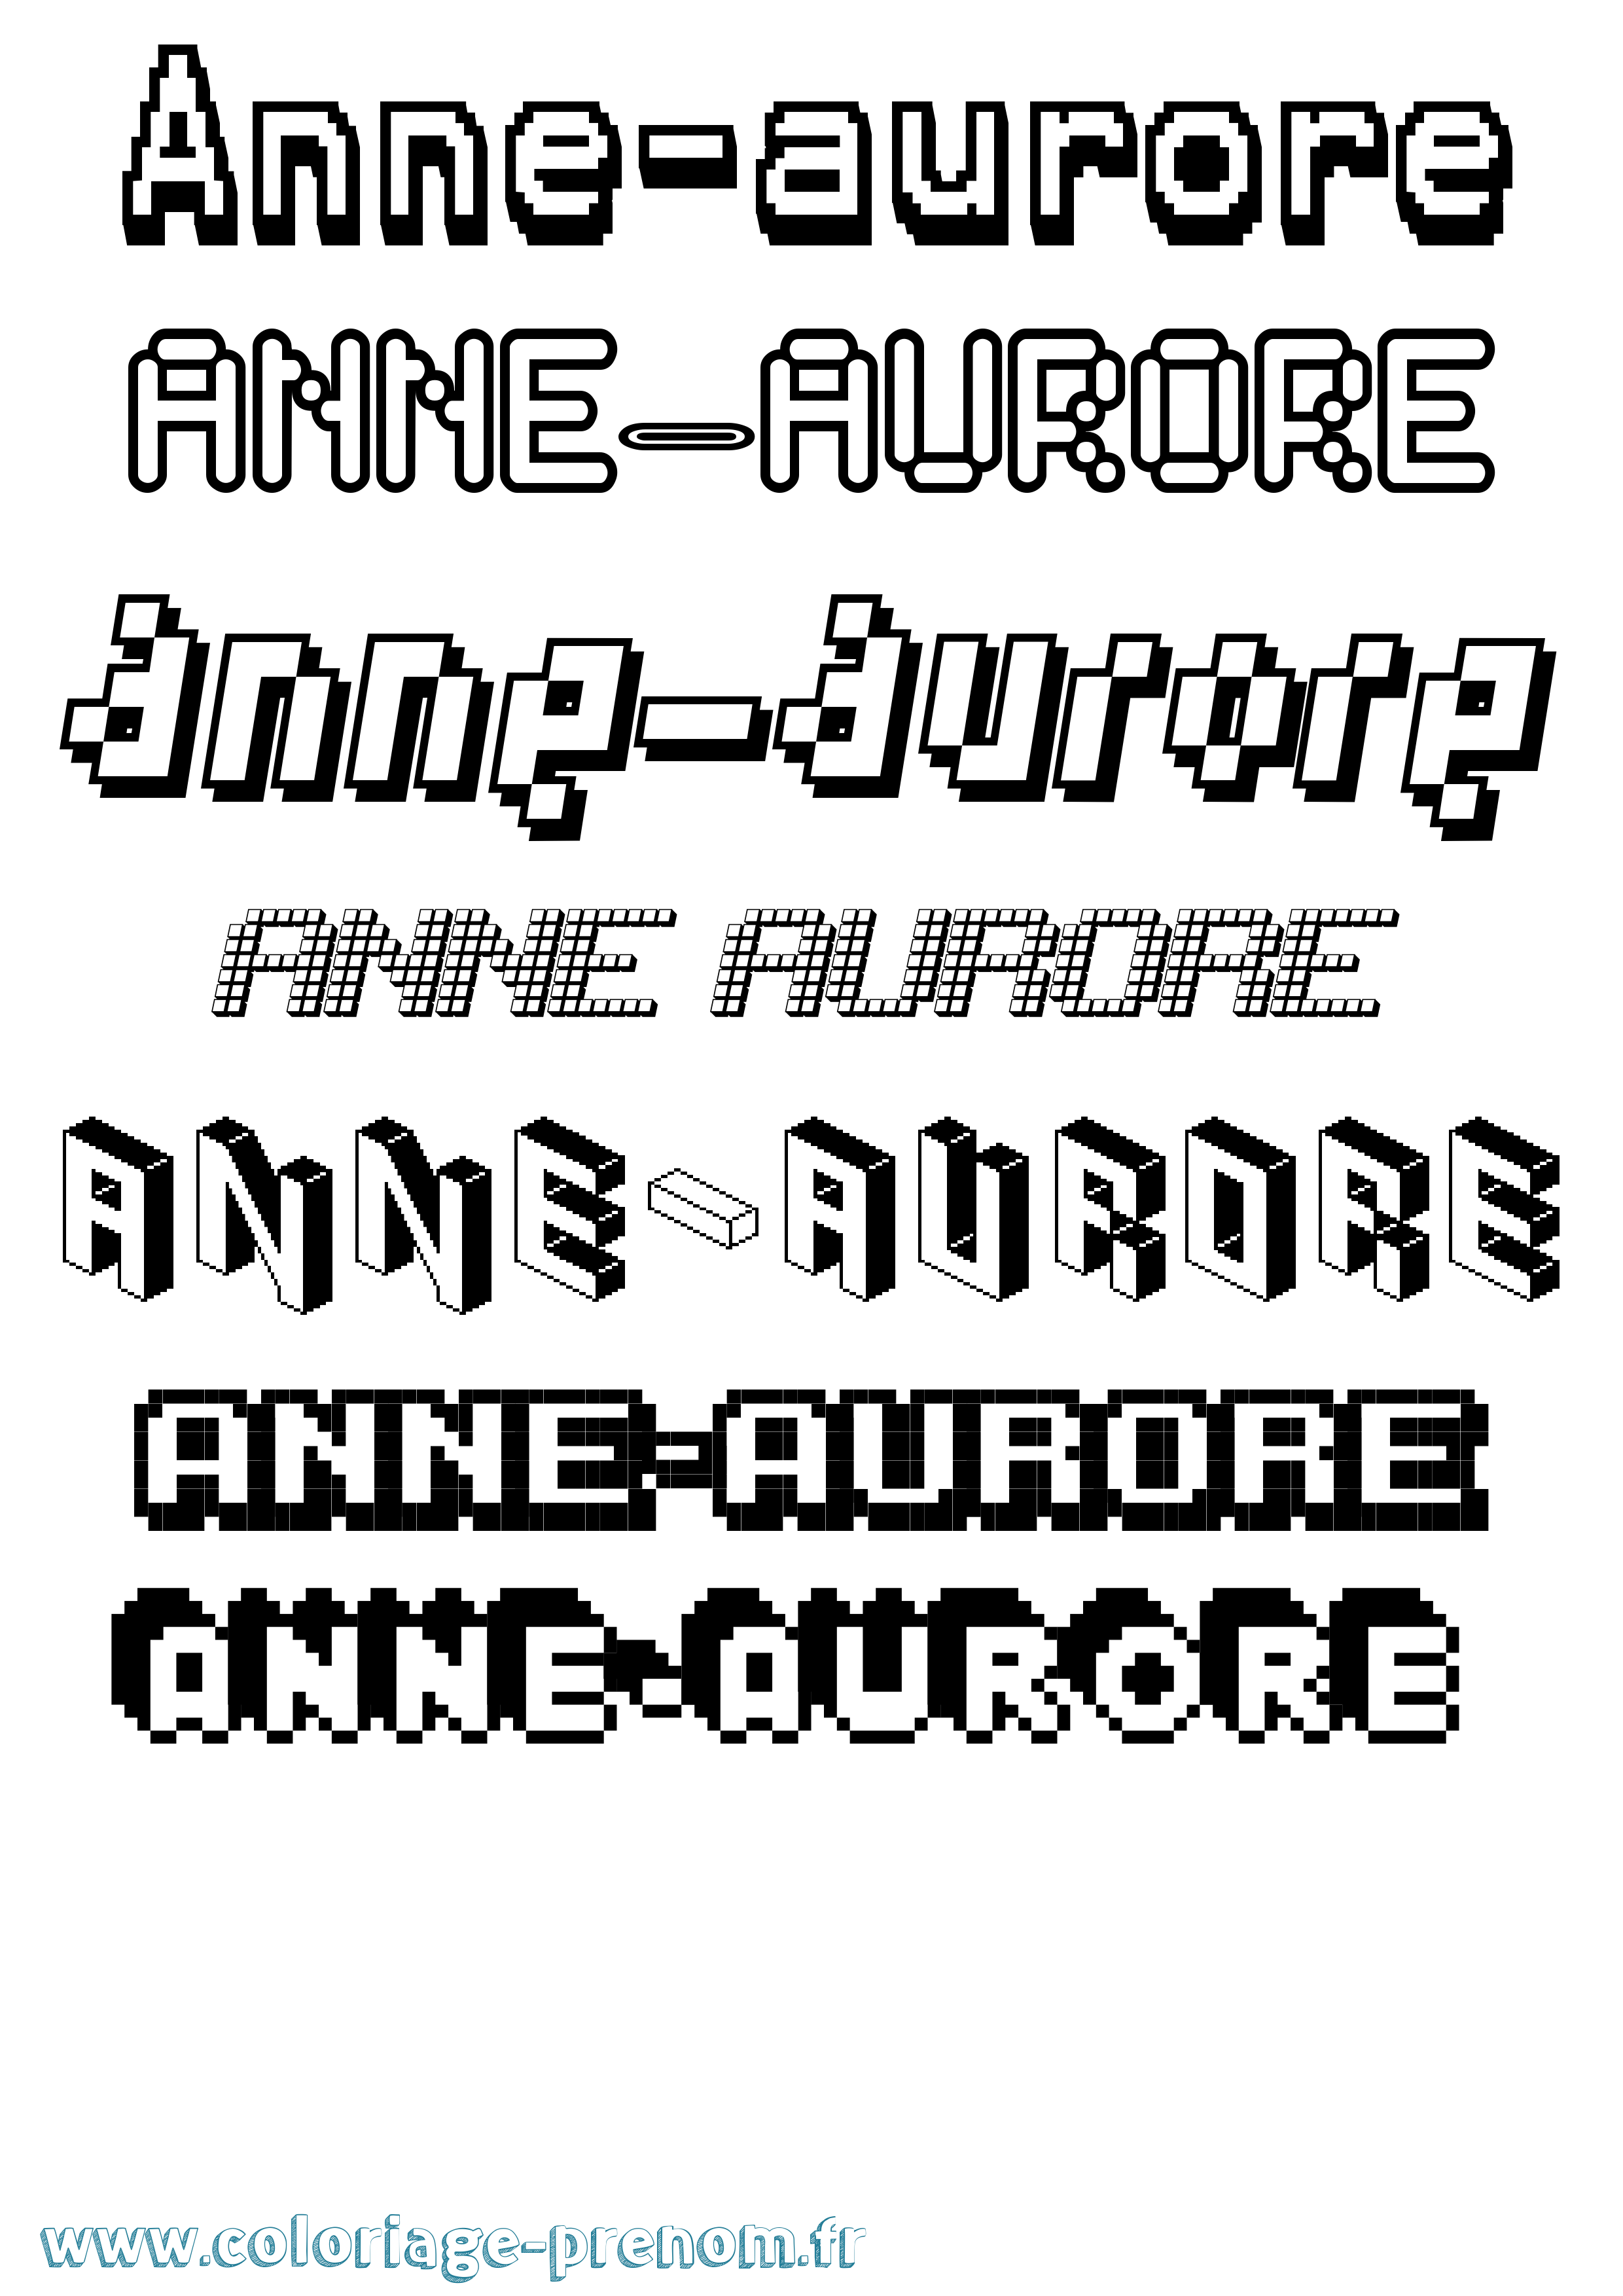 Coloriage prénom Anne-Aurore Pixel